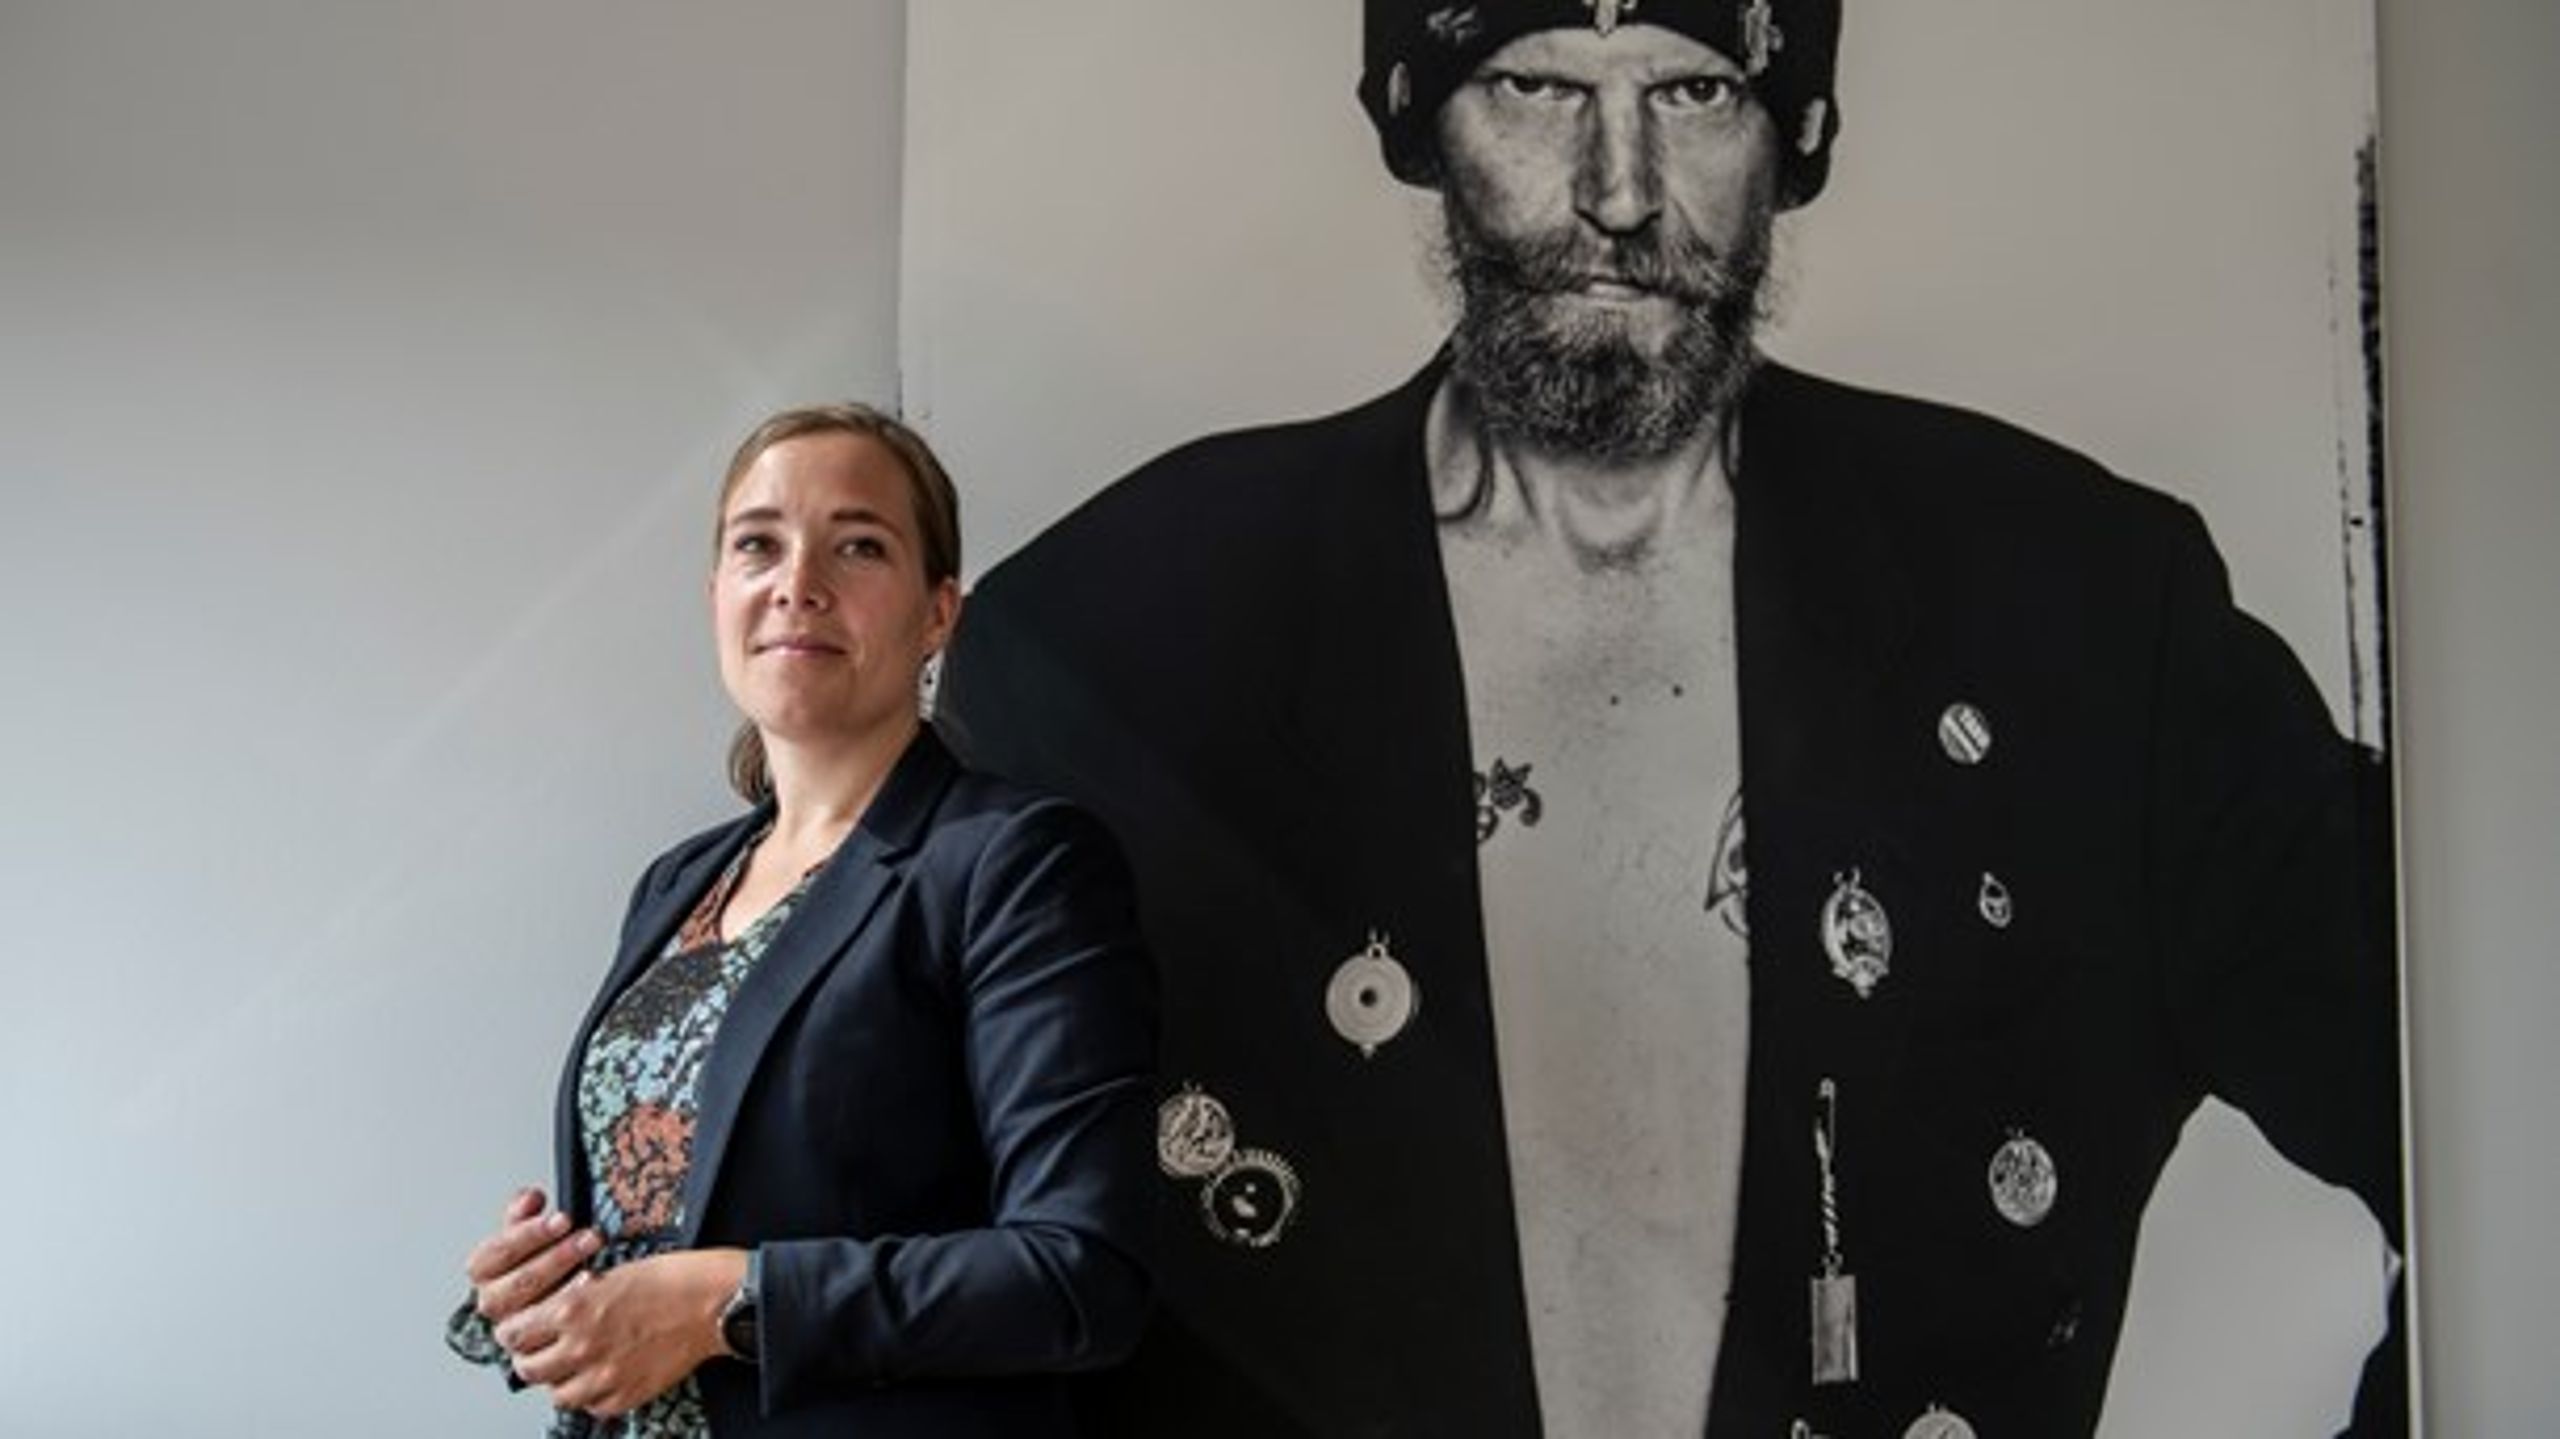 Kæmpe portrætter af hjemløse, taget af fotografen Helga Theilgaard, pryder ministerkontoret. "Så glemmer jeg ikke, hvorfor jeg er her," siger Astrid Krag.